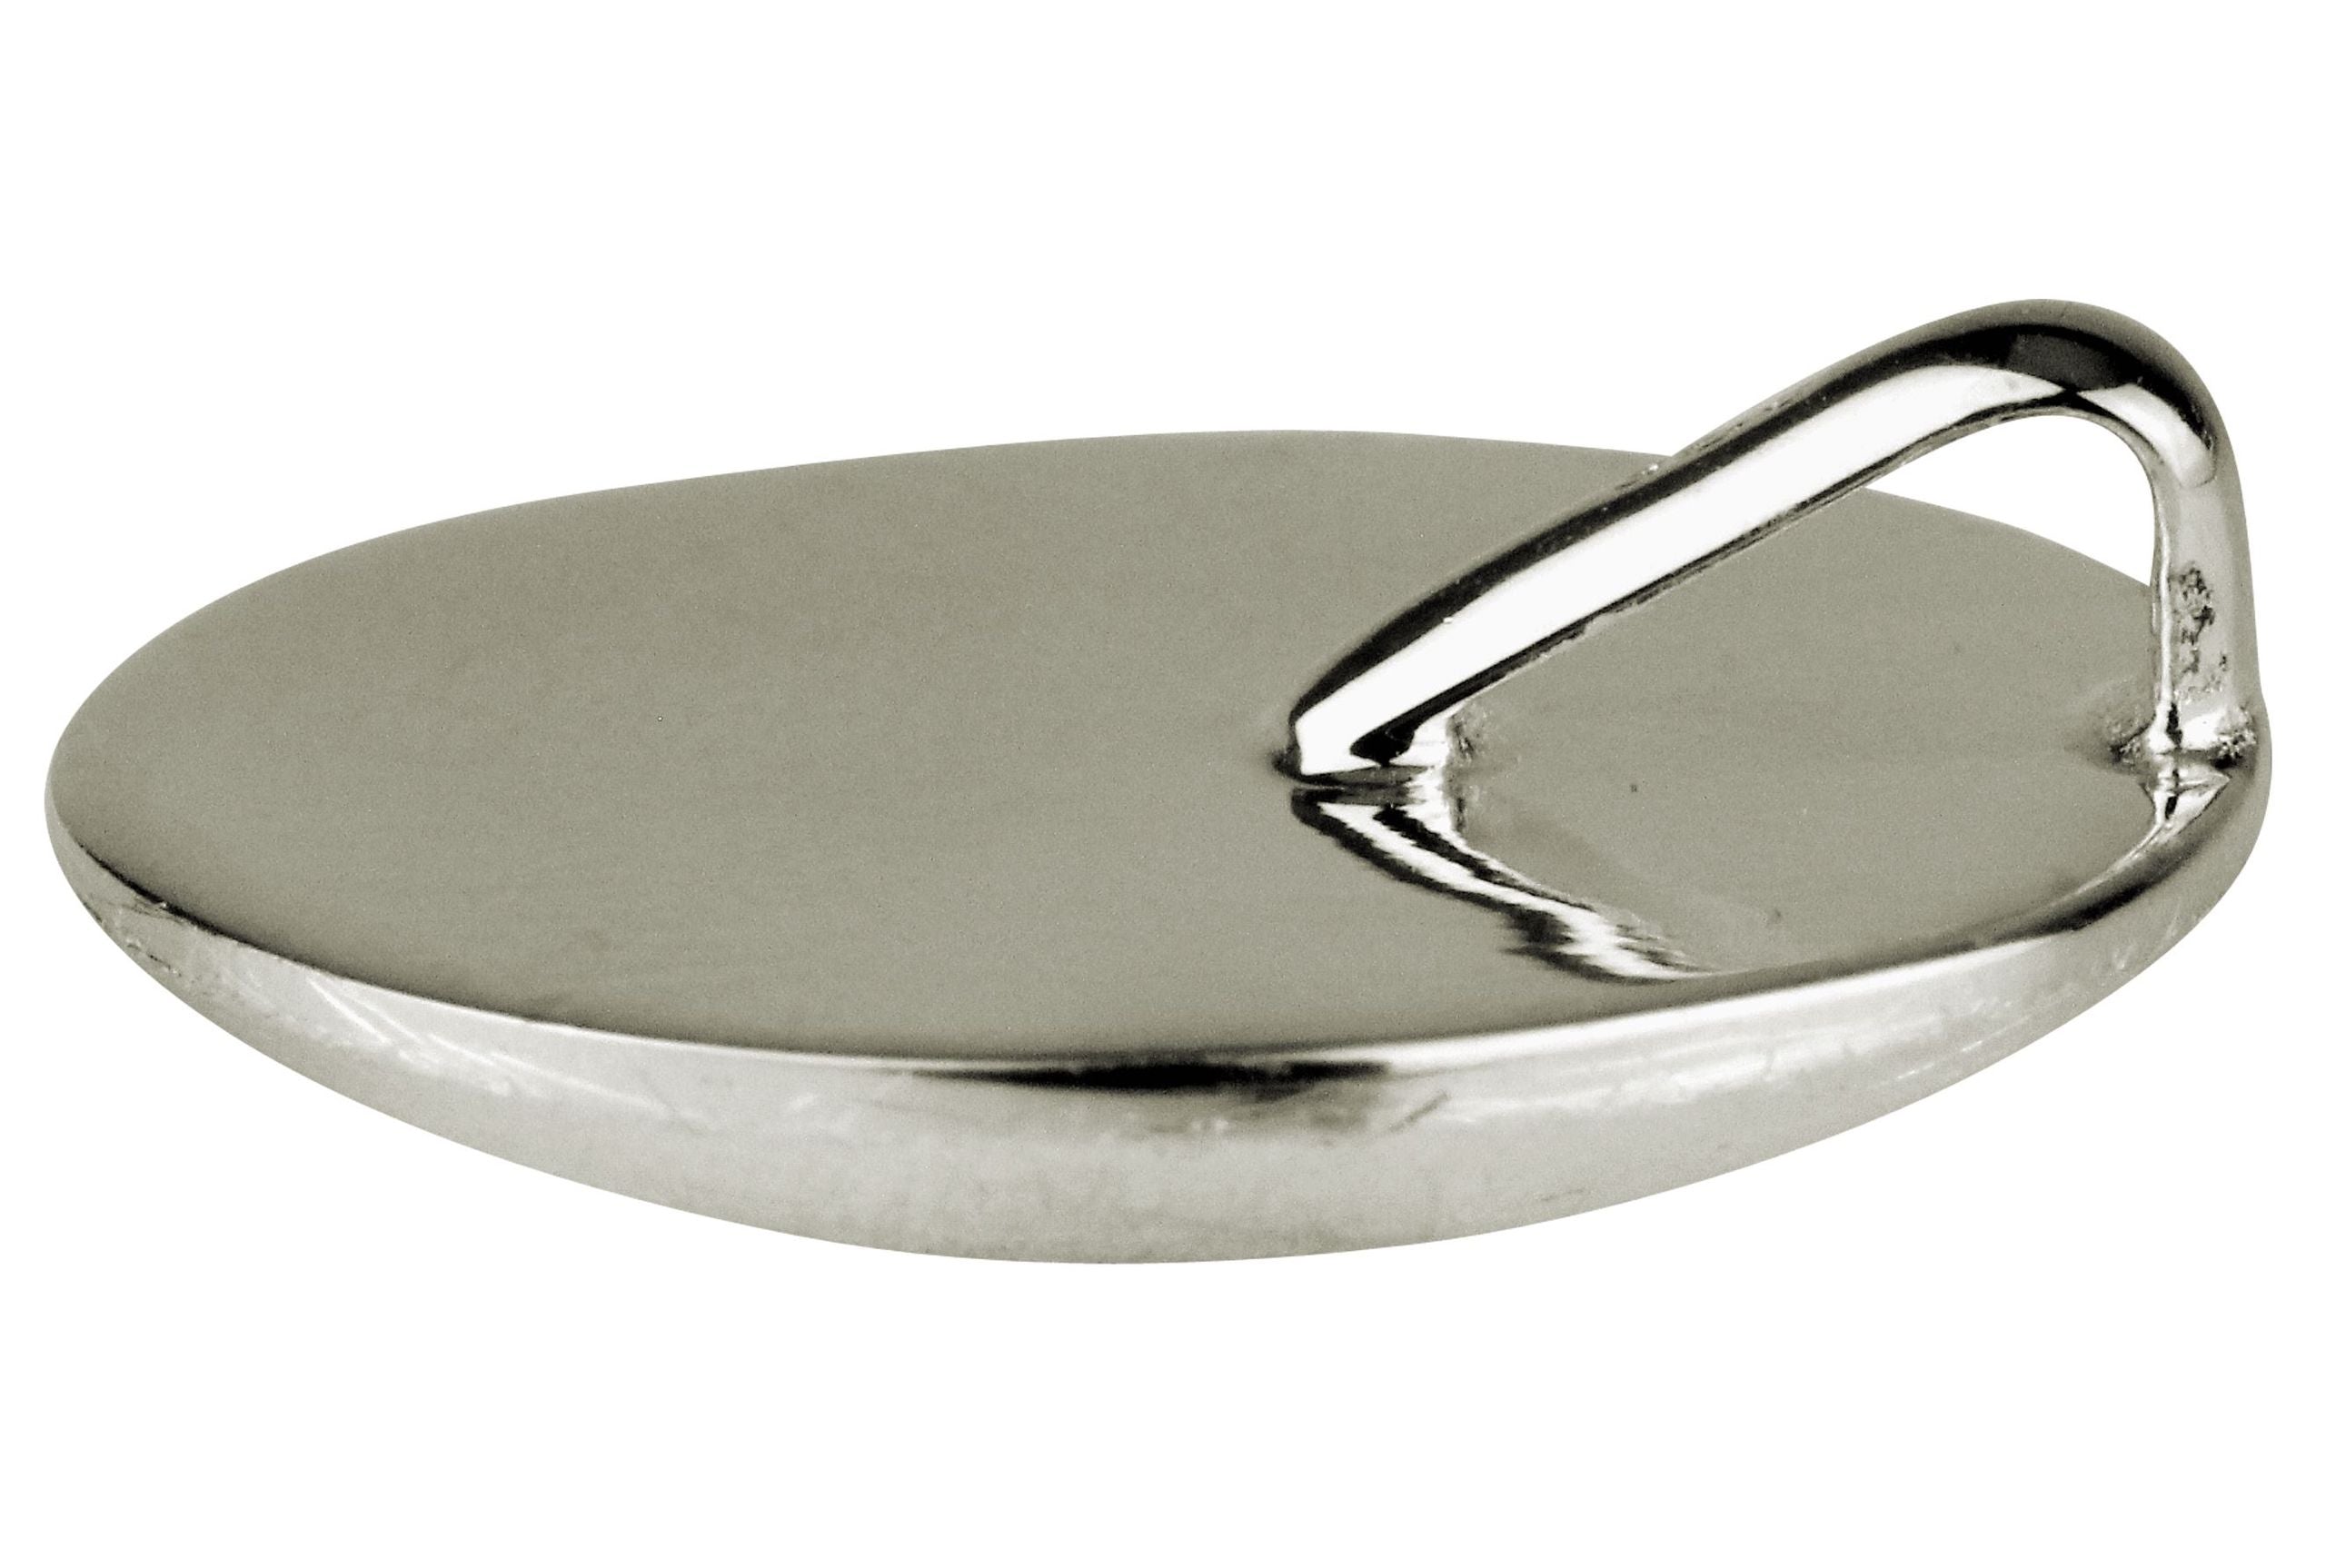 Die Rückseite eines runden Anhängers aus Silber für Damen, der im Design an einen Knopf erinnert.